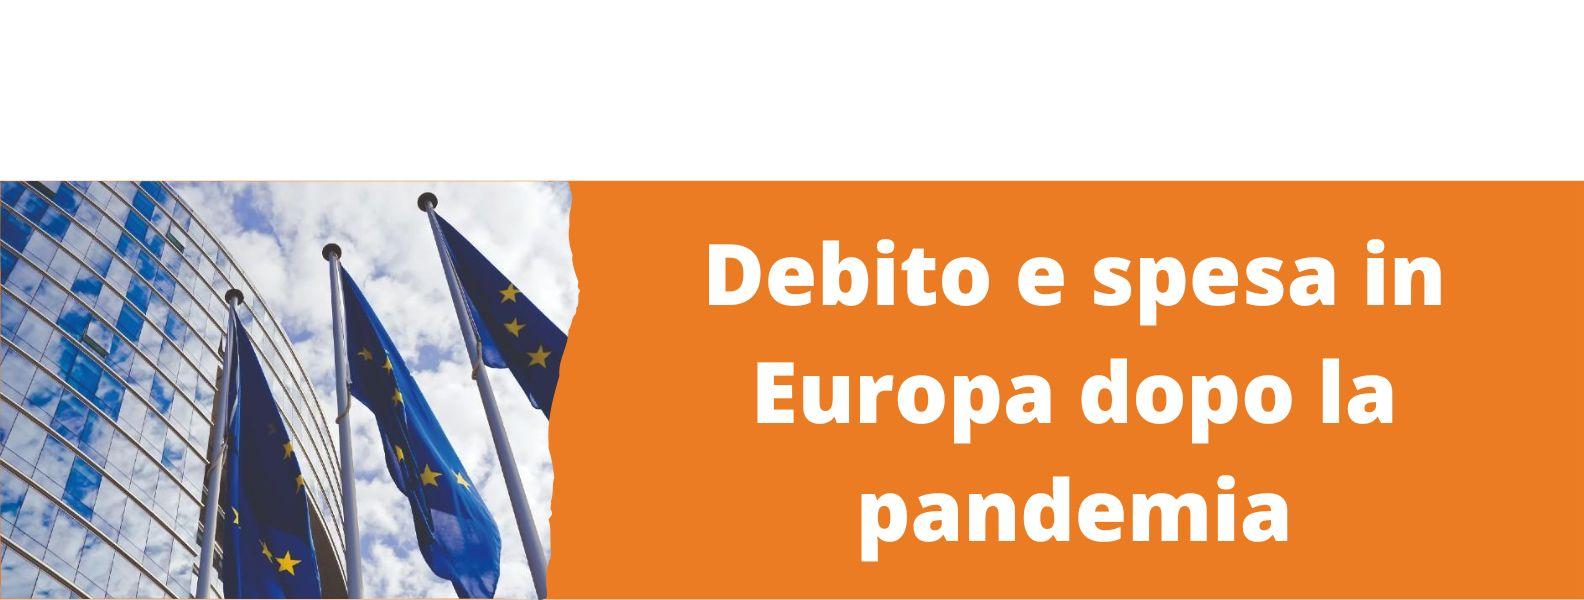 Immagine con link ad articoli su temi simili. L'immagine di bandiere dell'europa rimanda all'articolo intitolato: Debito e spesa in Europa dopo la pandemia